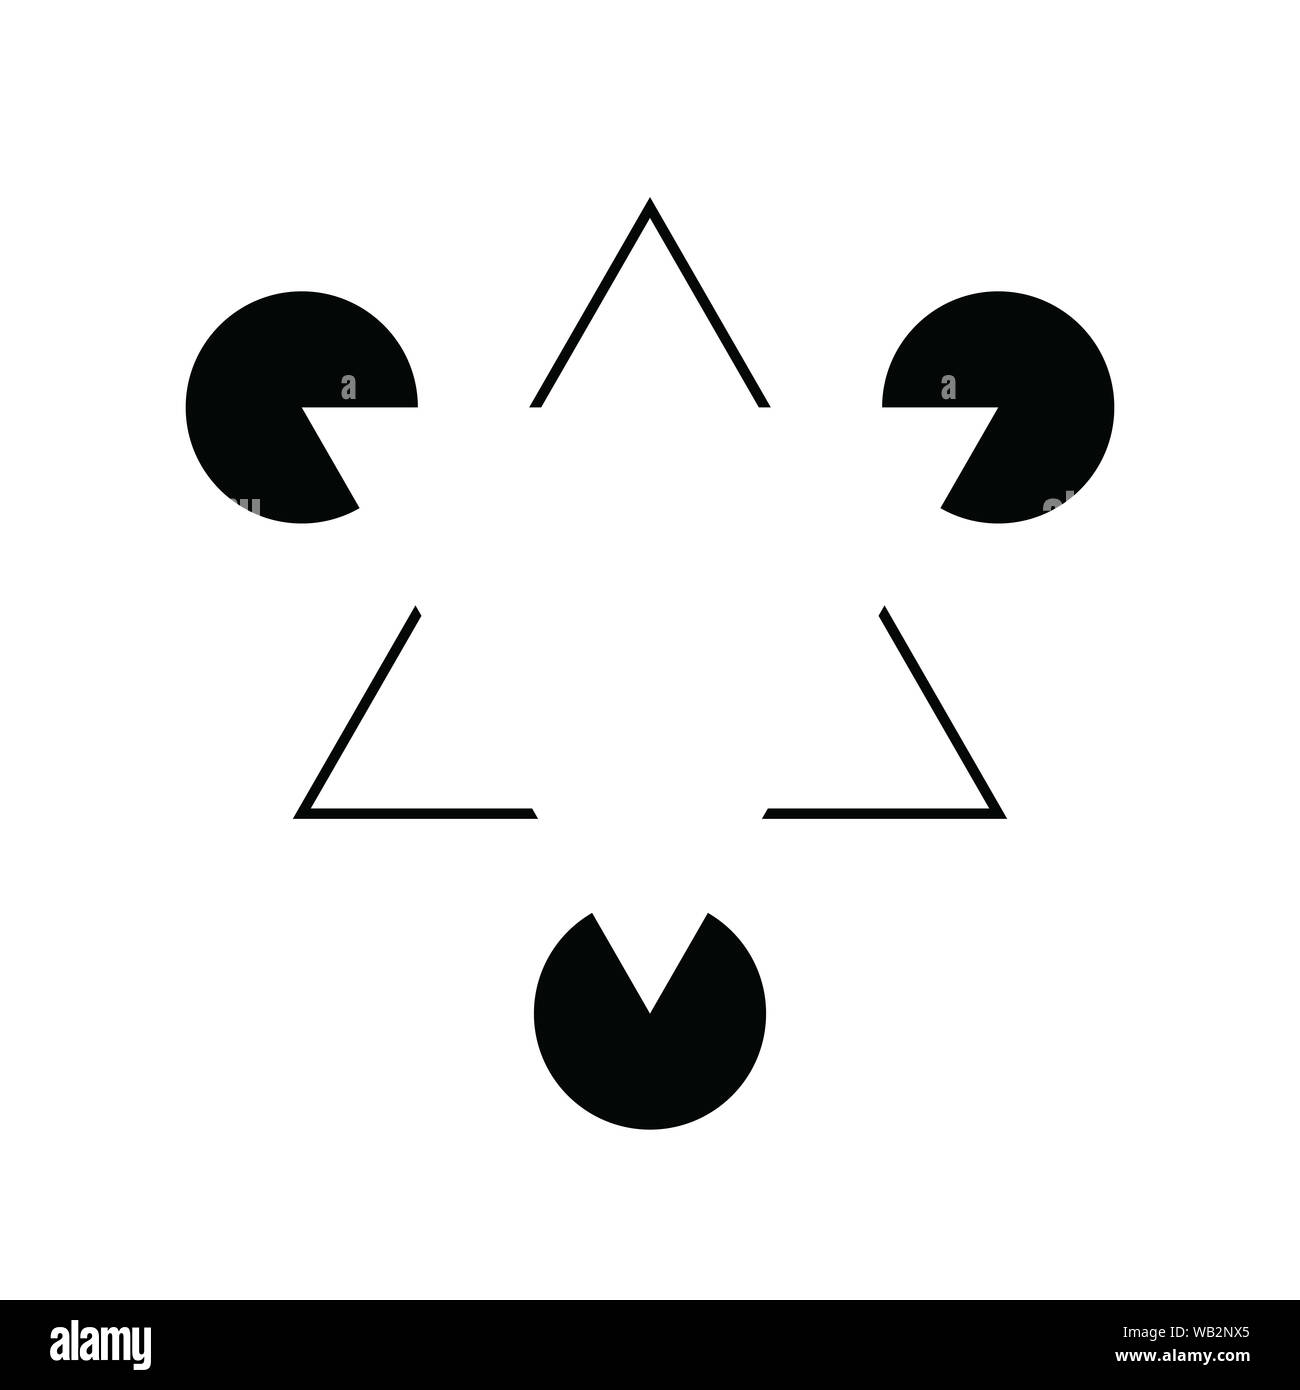 Kanizsa Triangle Illusion Stock Photo